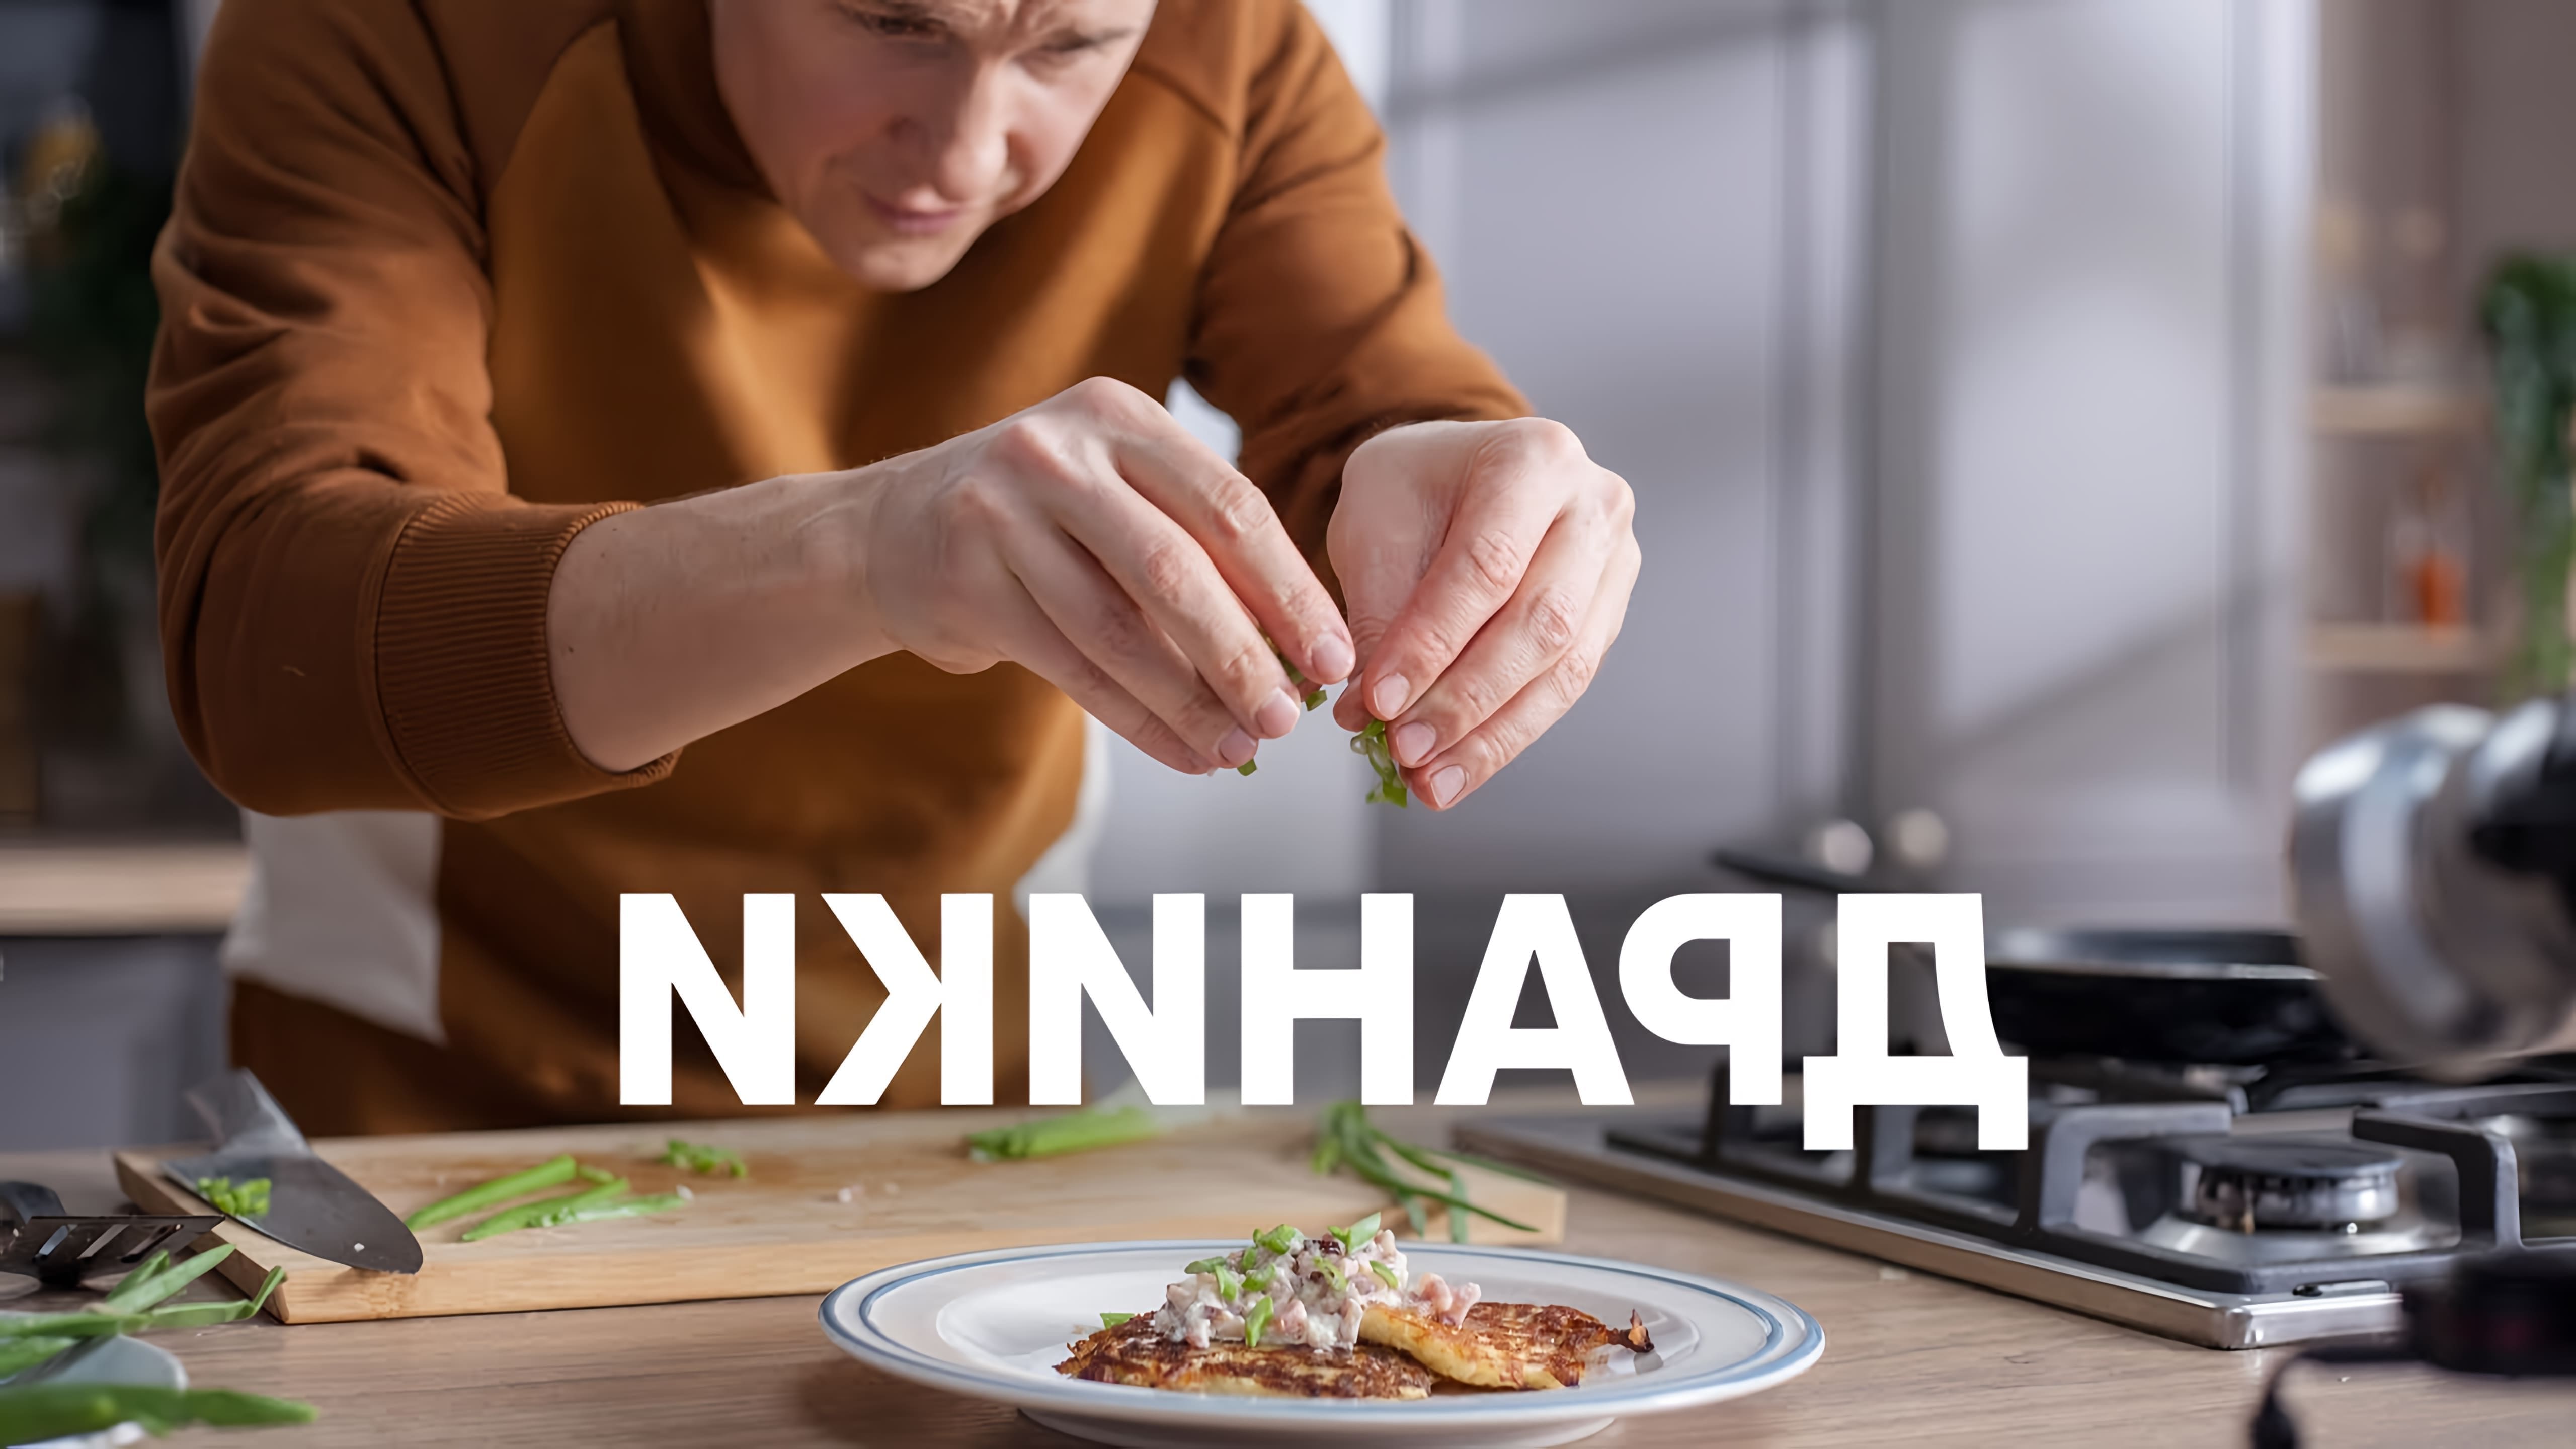 В этом видео шеф-повар показывает, как приготовить идеальные драники